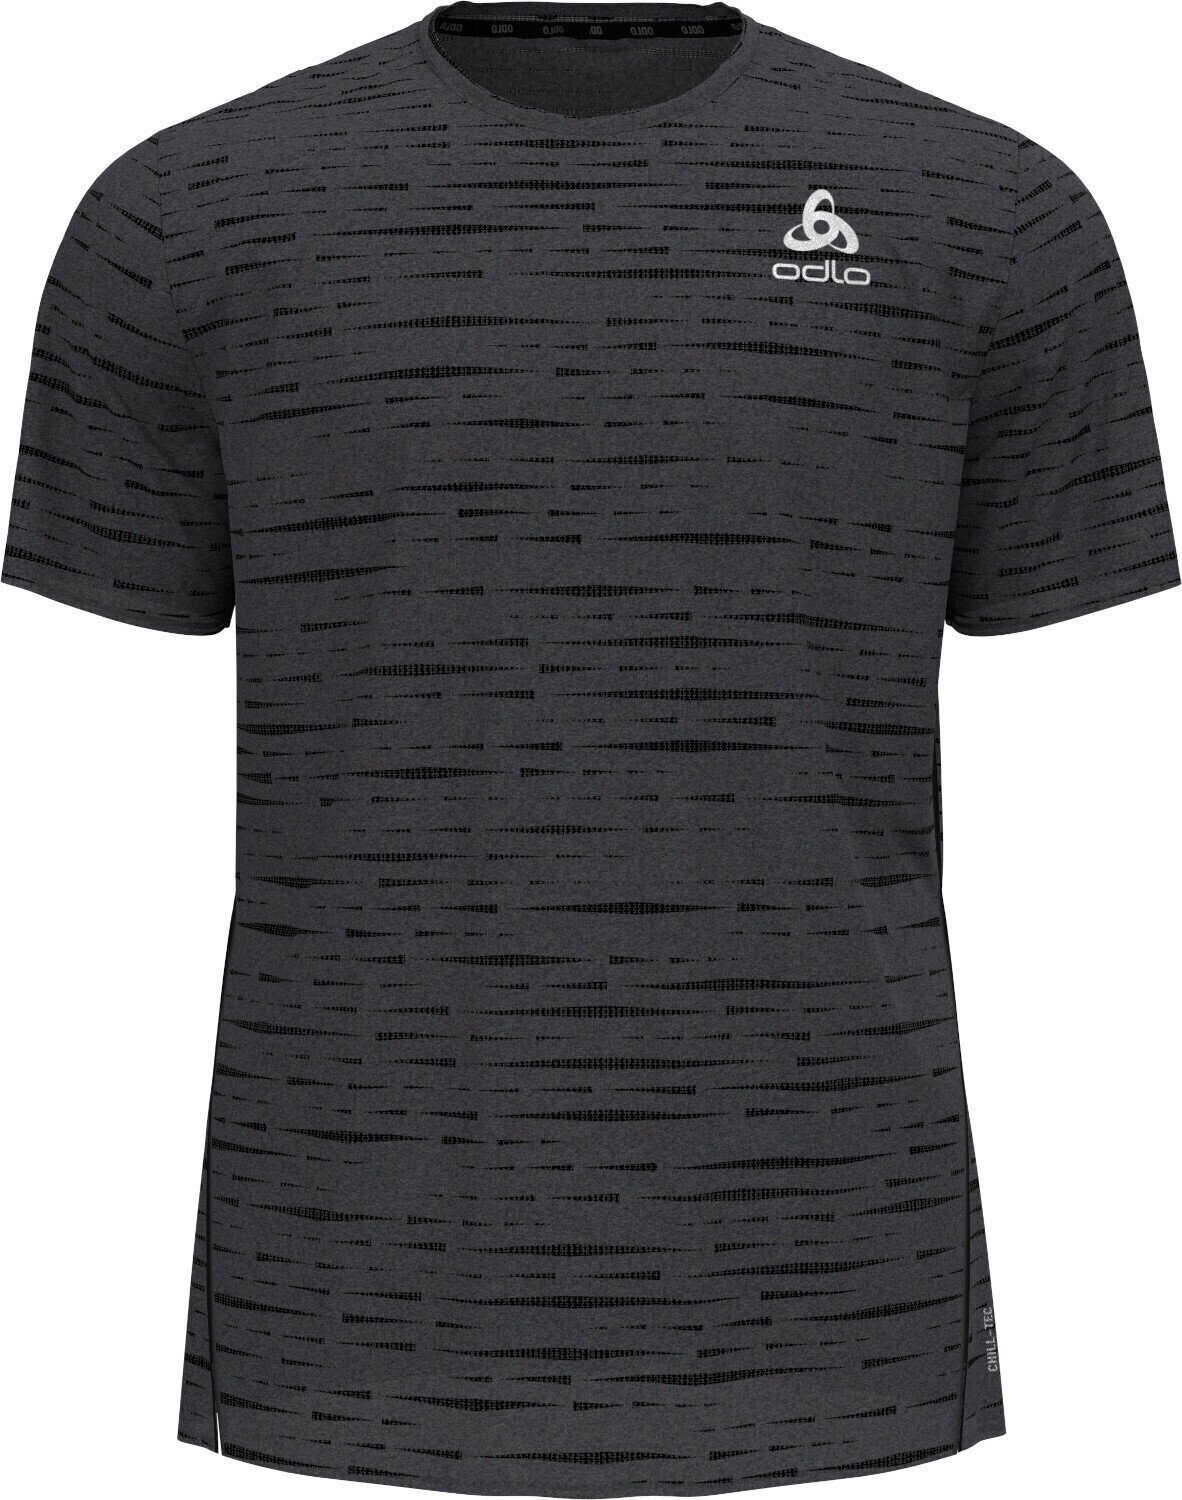 Löpartröja med kort ärm Odlo Zeroweight Engineered Chill-Tec T-Shirt Black Melange XL Löpartröja med kort ärm